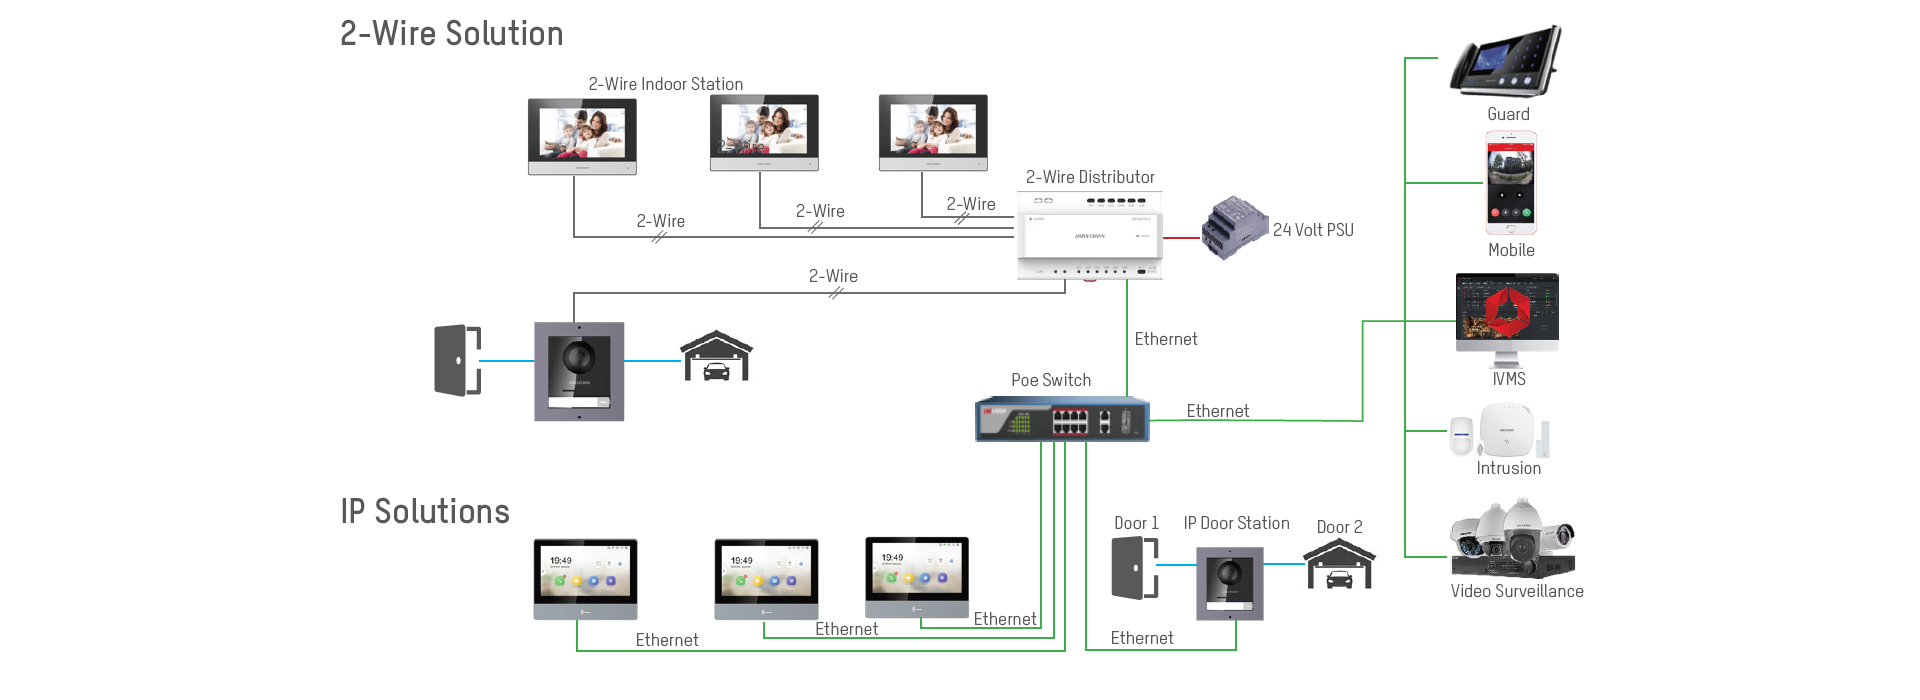 hikvision smart intercom system